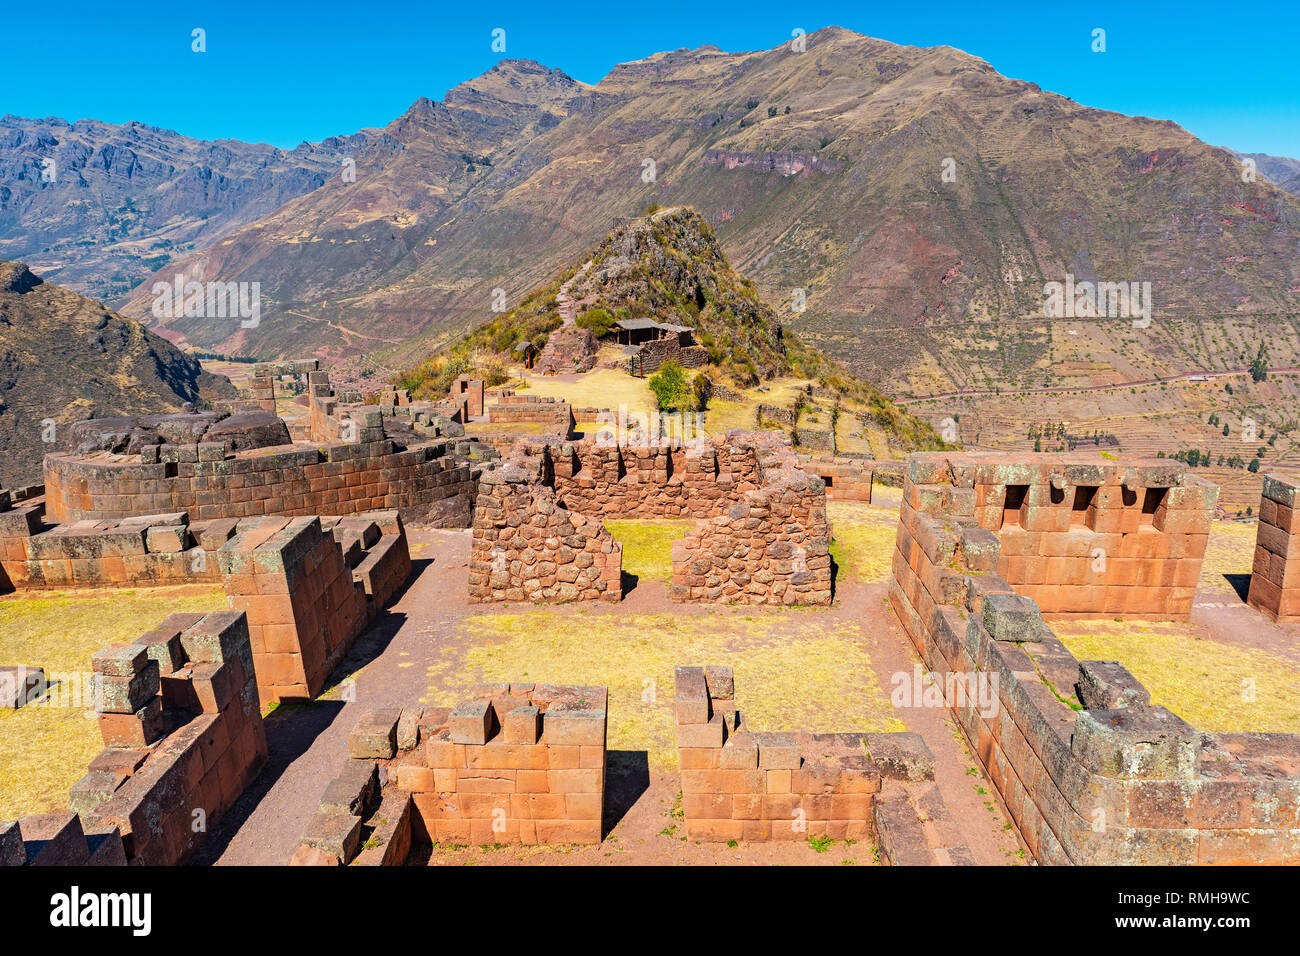 Le maestose rovine Inca di Pisac con imponenti mura Inca e la cordigliera delle Ande in background nei pressi di Cusco, Perù. Foto Stock